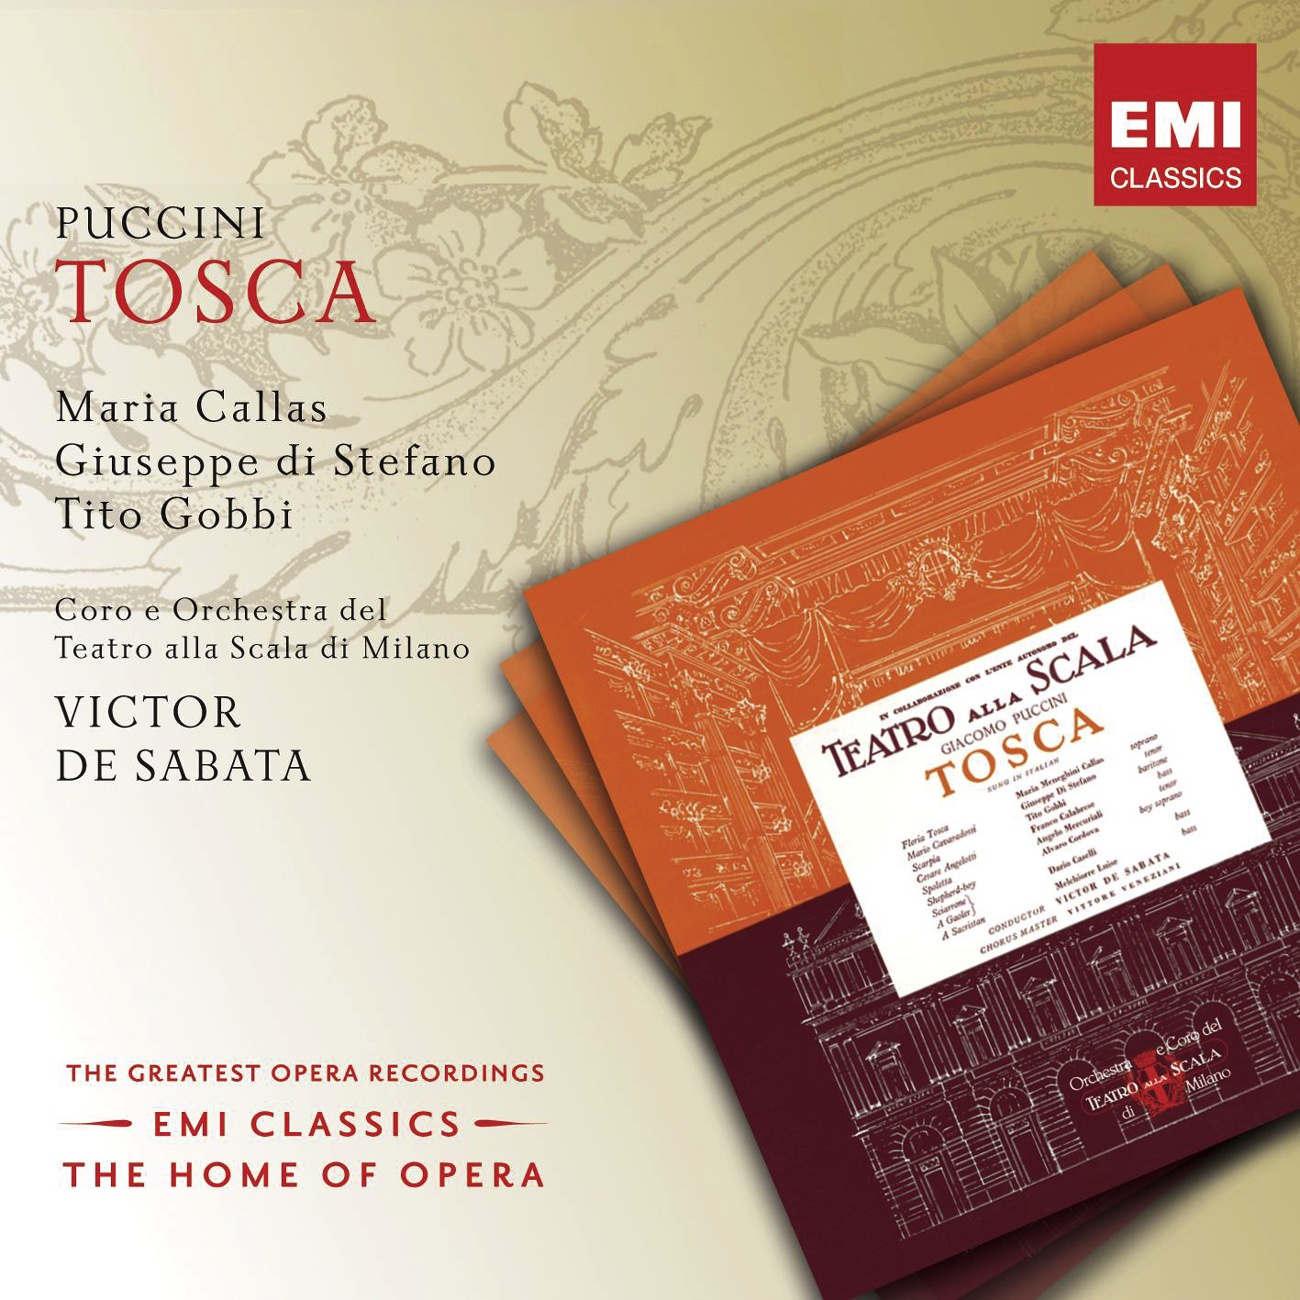 Tosca (2002 Digital Remaster), ACT THREE: Presto! Su, Mario! (Tosca/Spoletta/Sciarrone/Soldati)